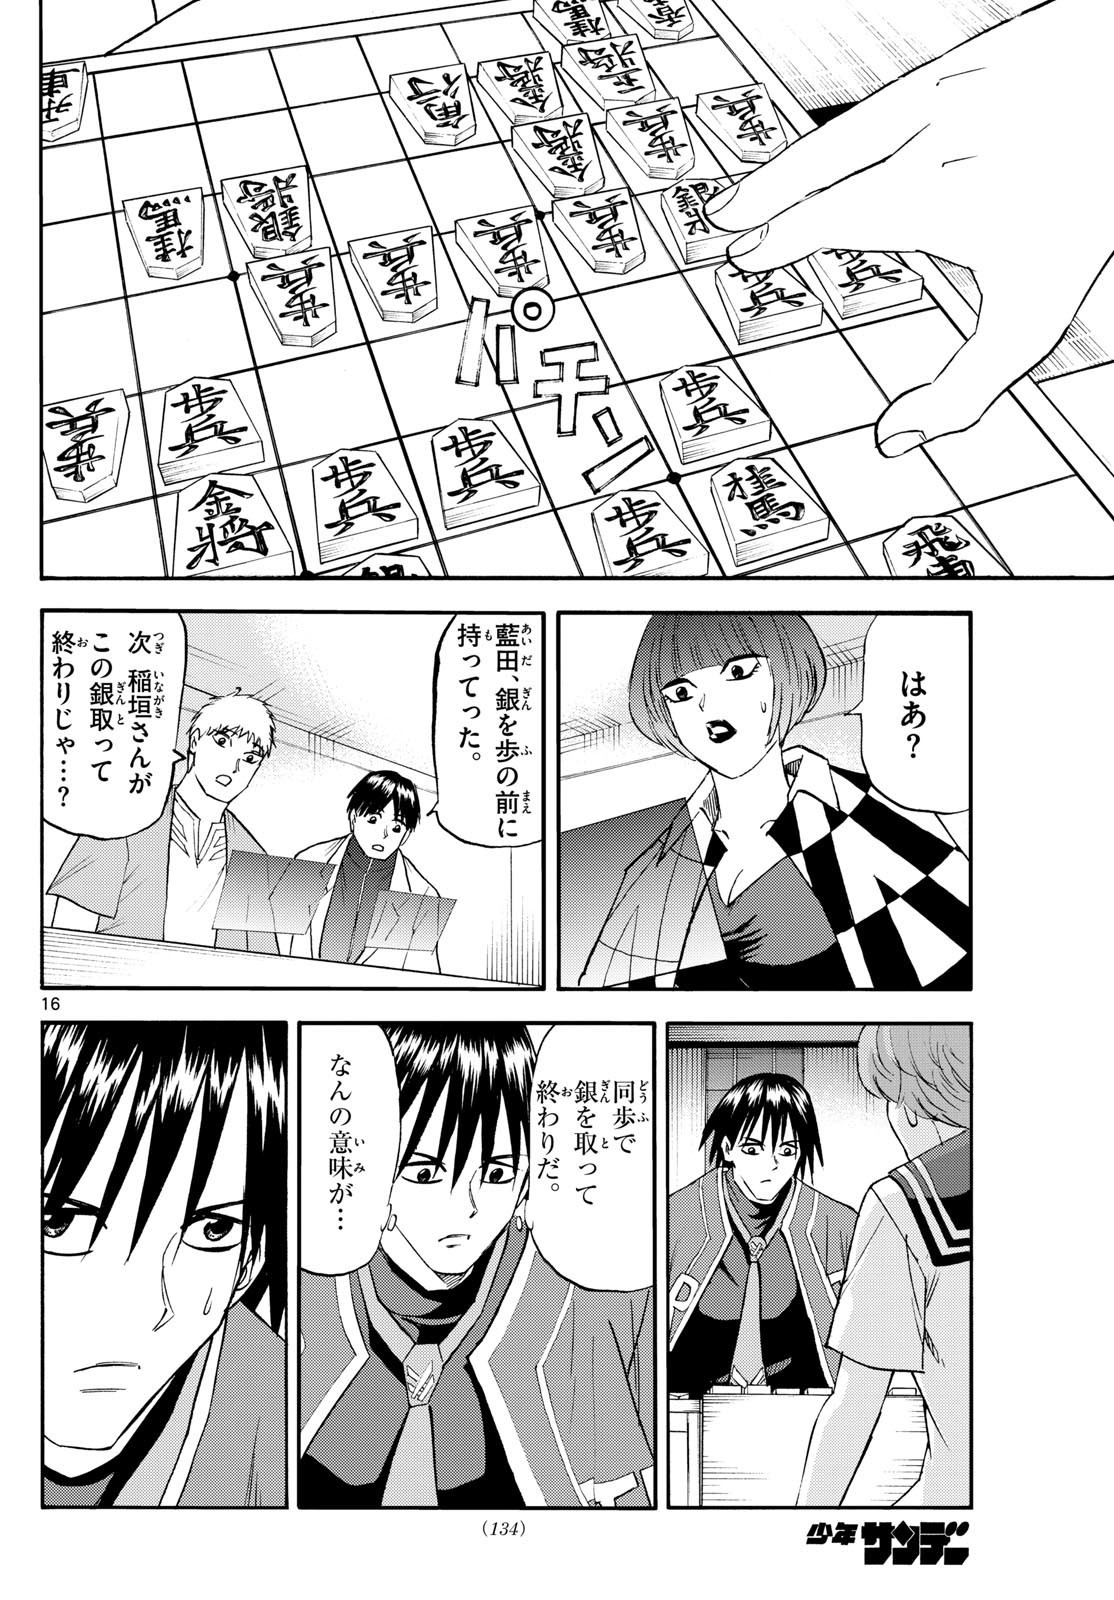 Ryu-to-Ichigo - Chapter 197 - Page 16